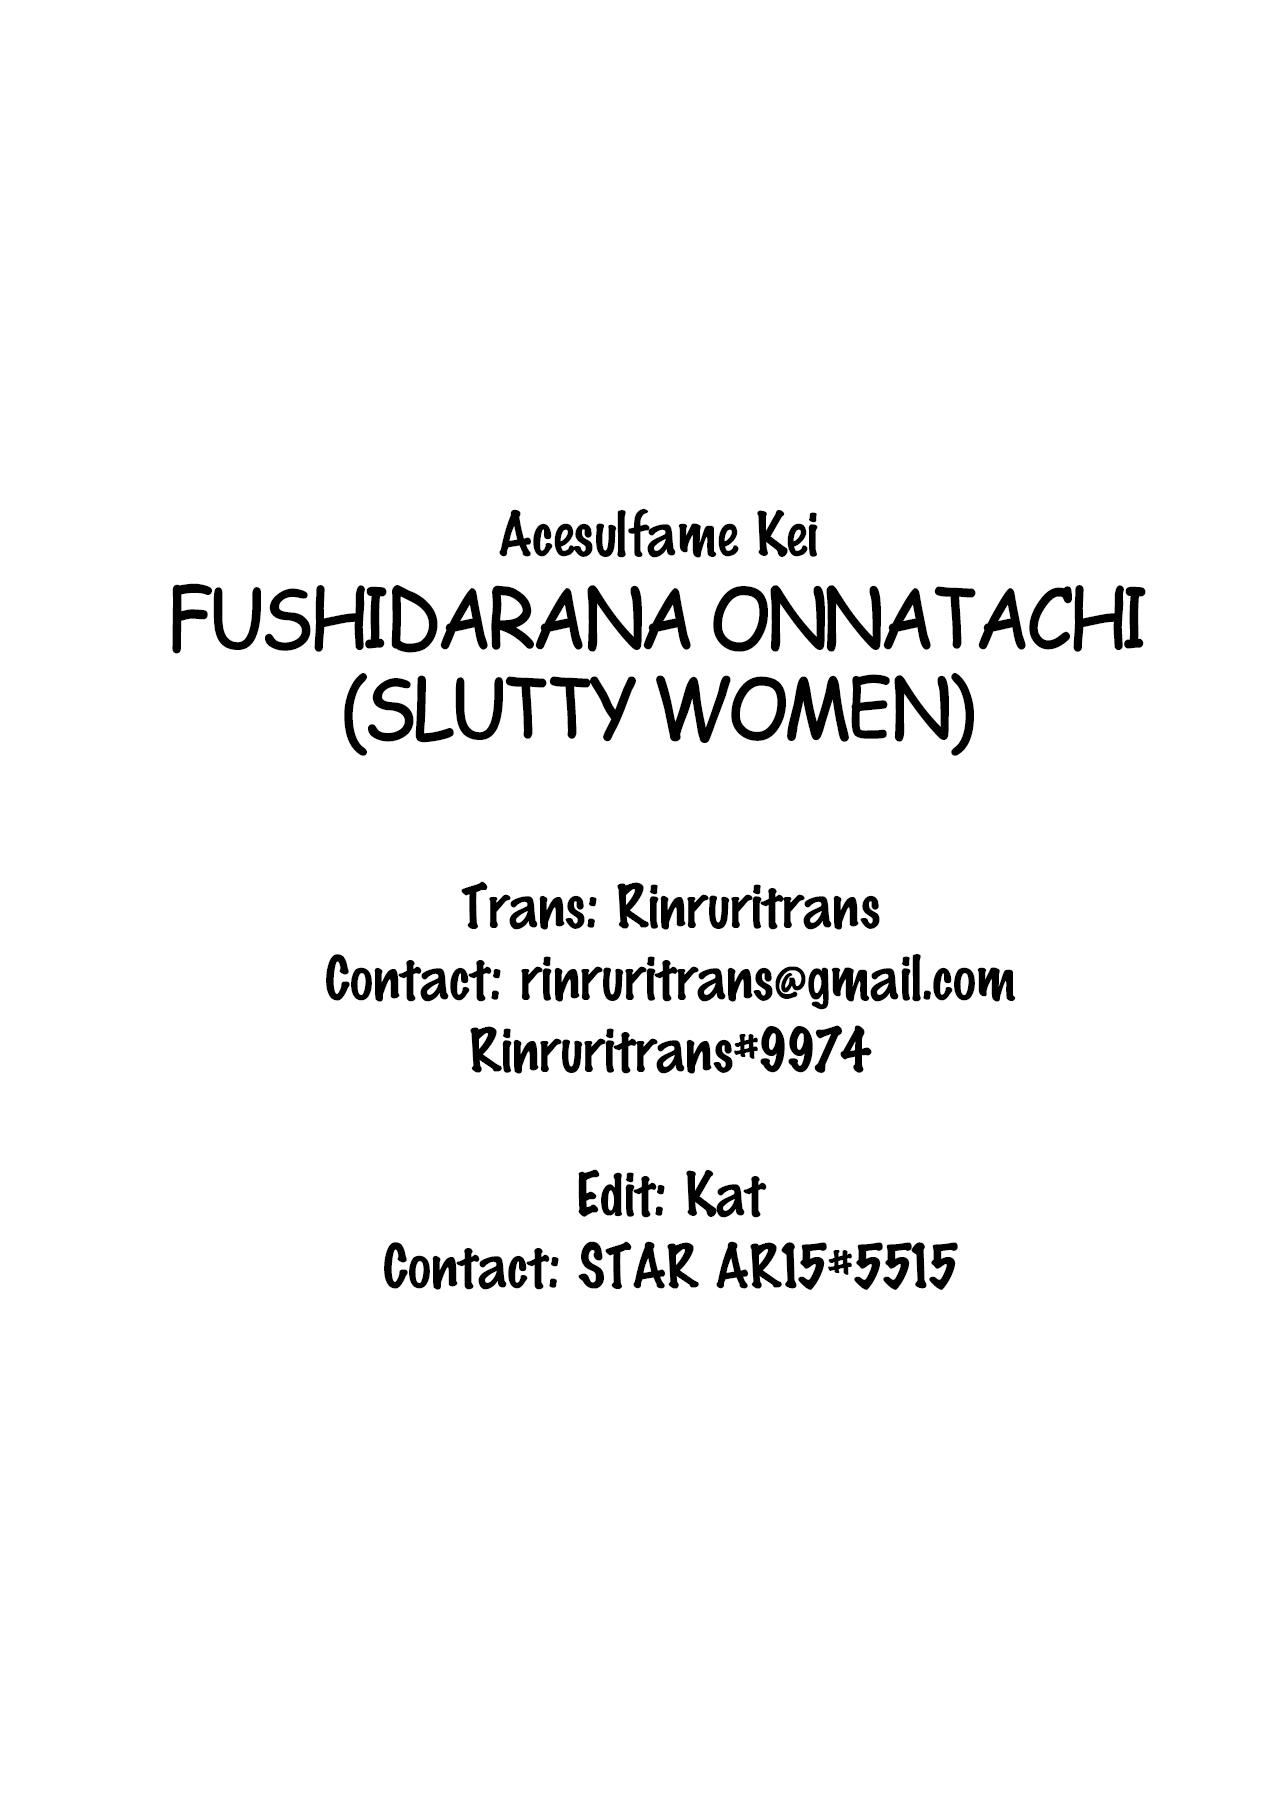 Slutty Women | Fushidarana Onnatachi 1